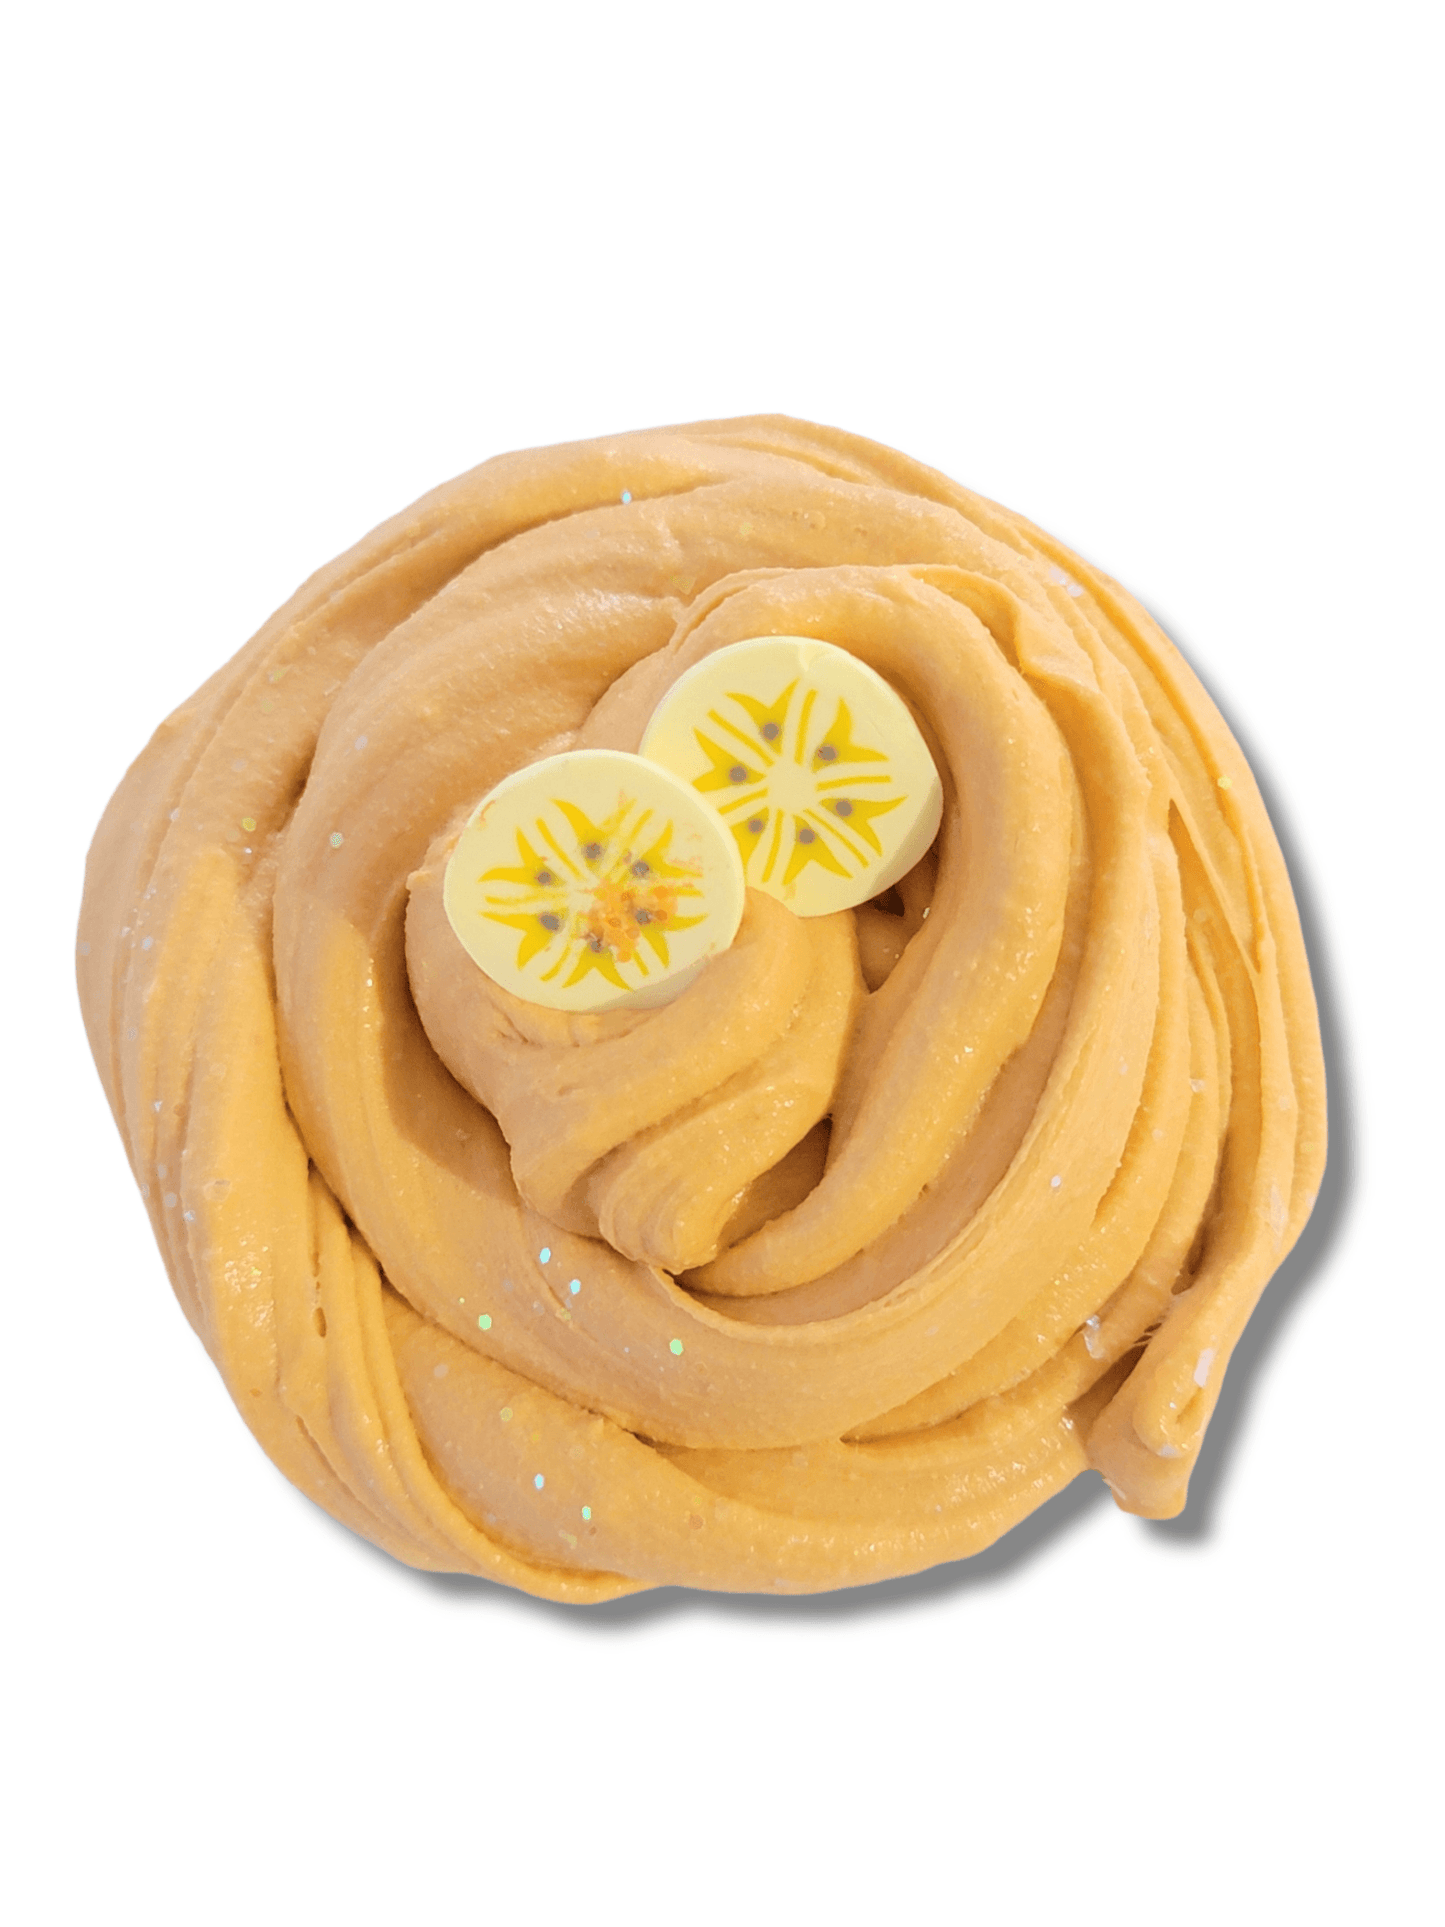 Peanut Butter Banana & Honey Toast DIY Slime Kit Slime by Hoshimi Slimes LLC | Hoshimi Slimes LLC